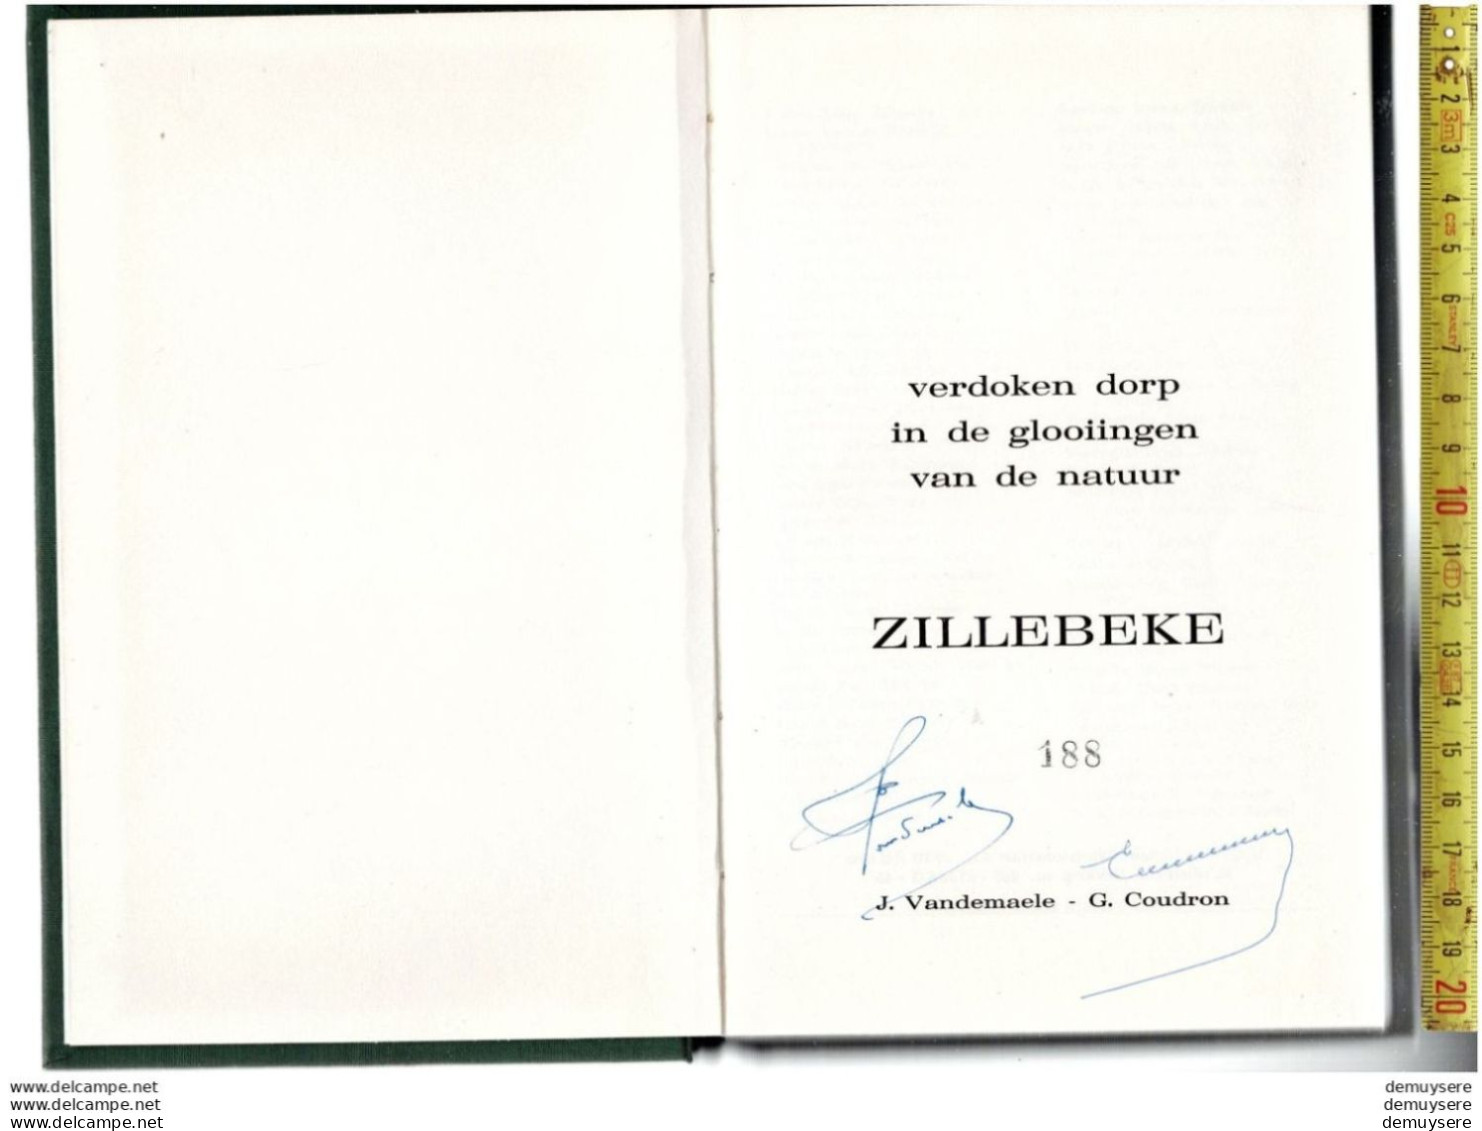 BOEK VERDOKEN DORP IN DE GLOOIINGEN VAN DE NATUUR ZILLEBEKE -  188 - 1974 - 198 BLZ. GETELEND - Historia